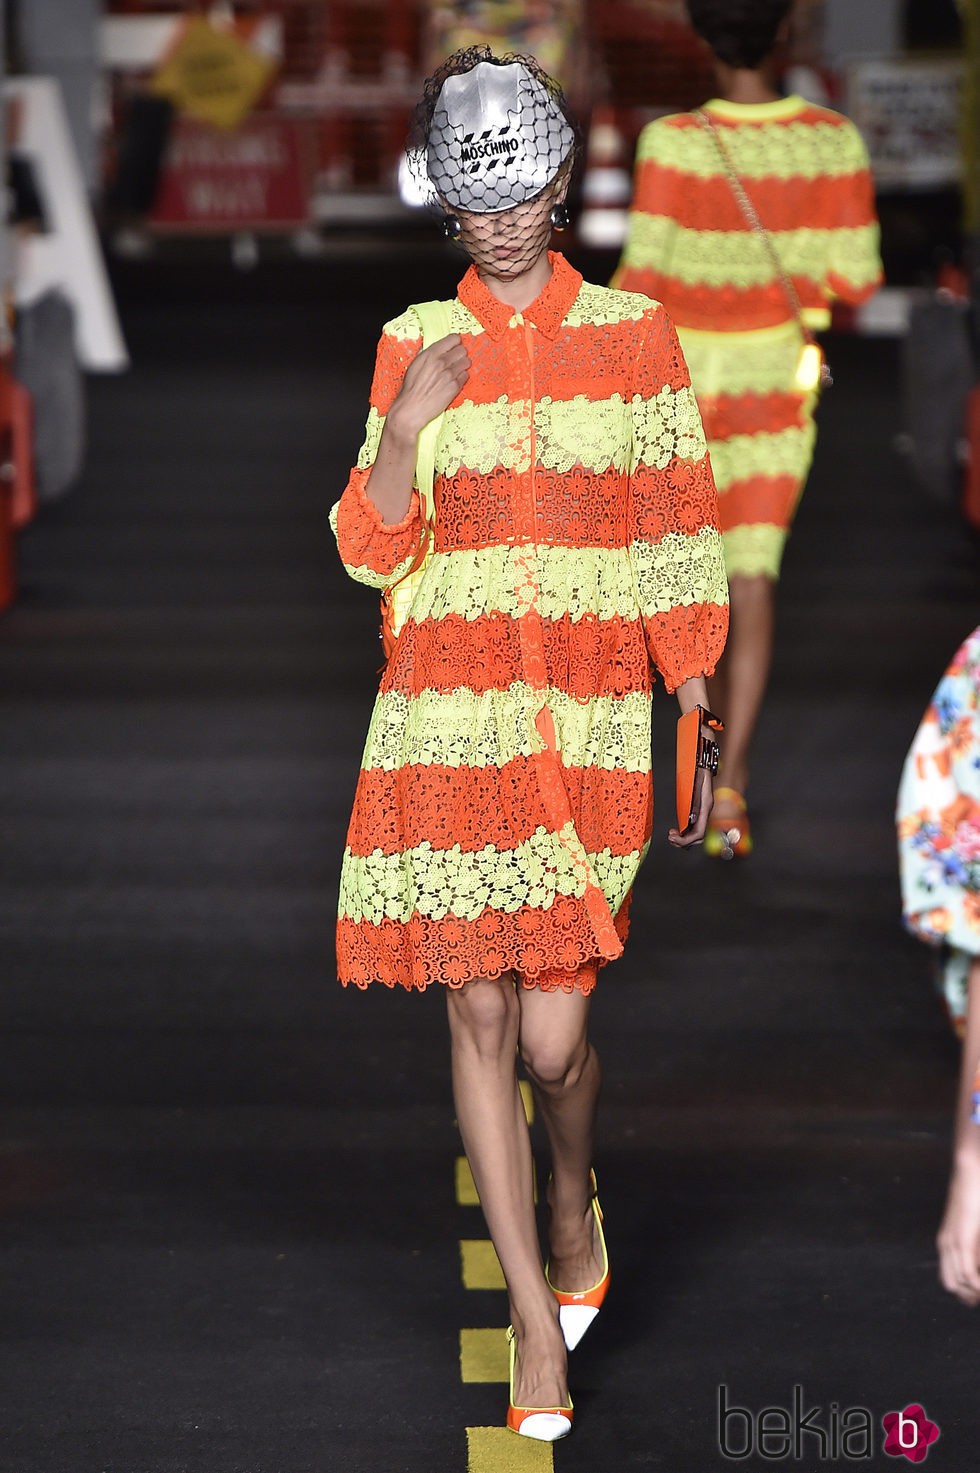 Vestido amarillo y naranja flúor de Moschino en la Milan Fashion Week primavera/verano 2016